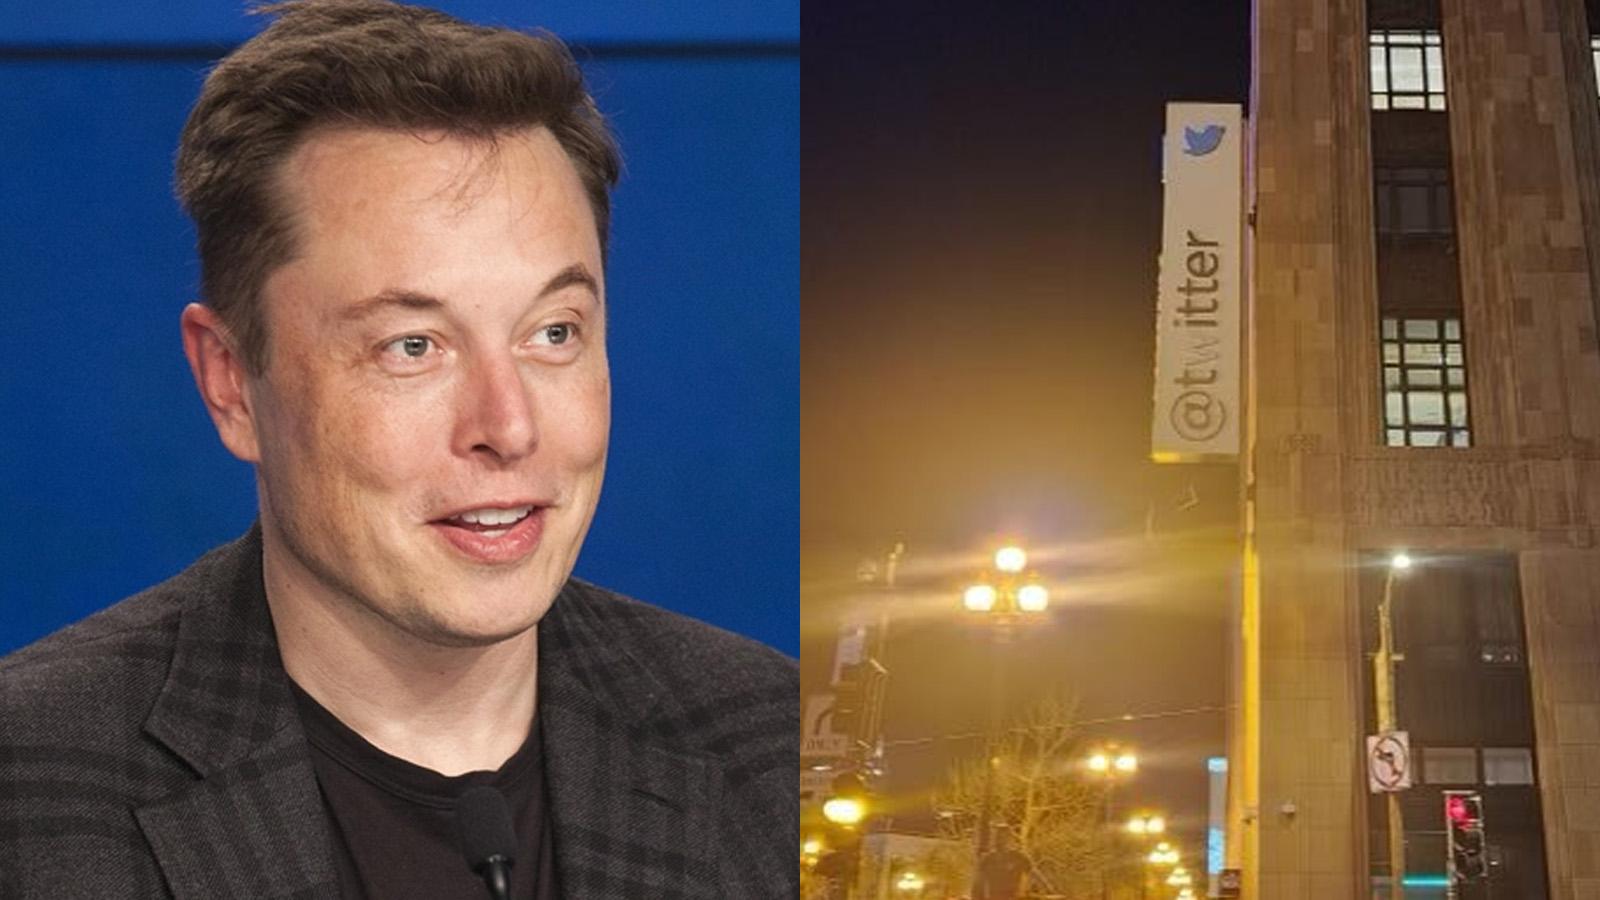 Elon Musk Twitter HQ sign